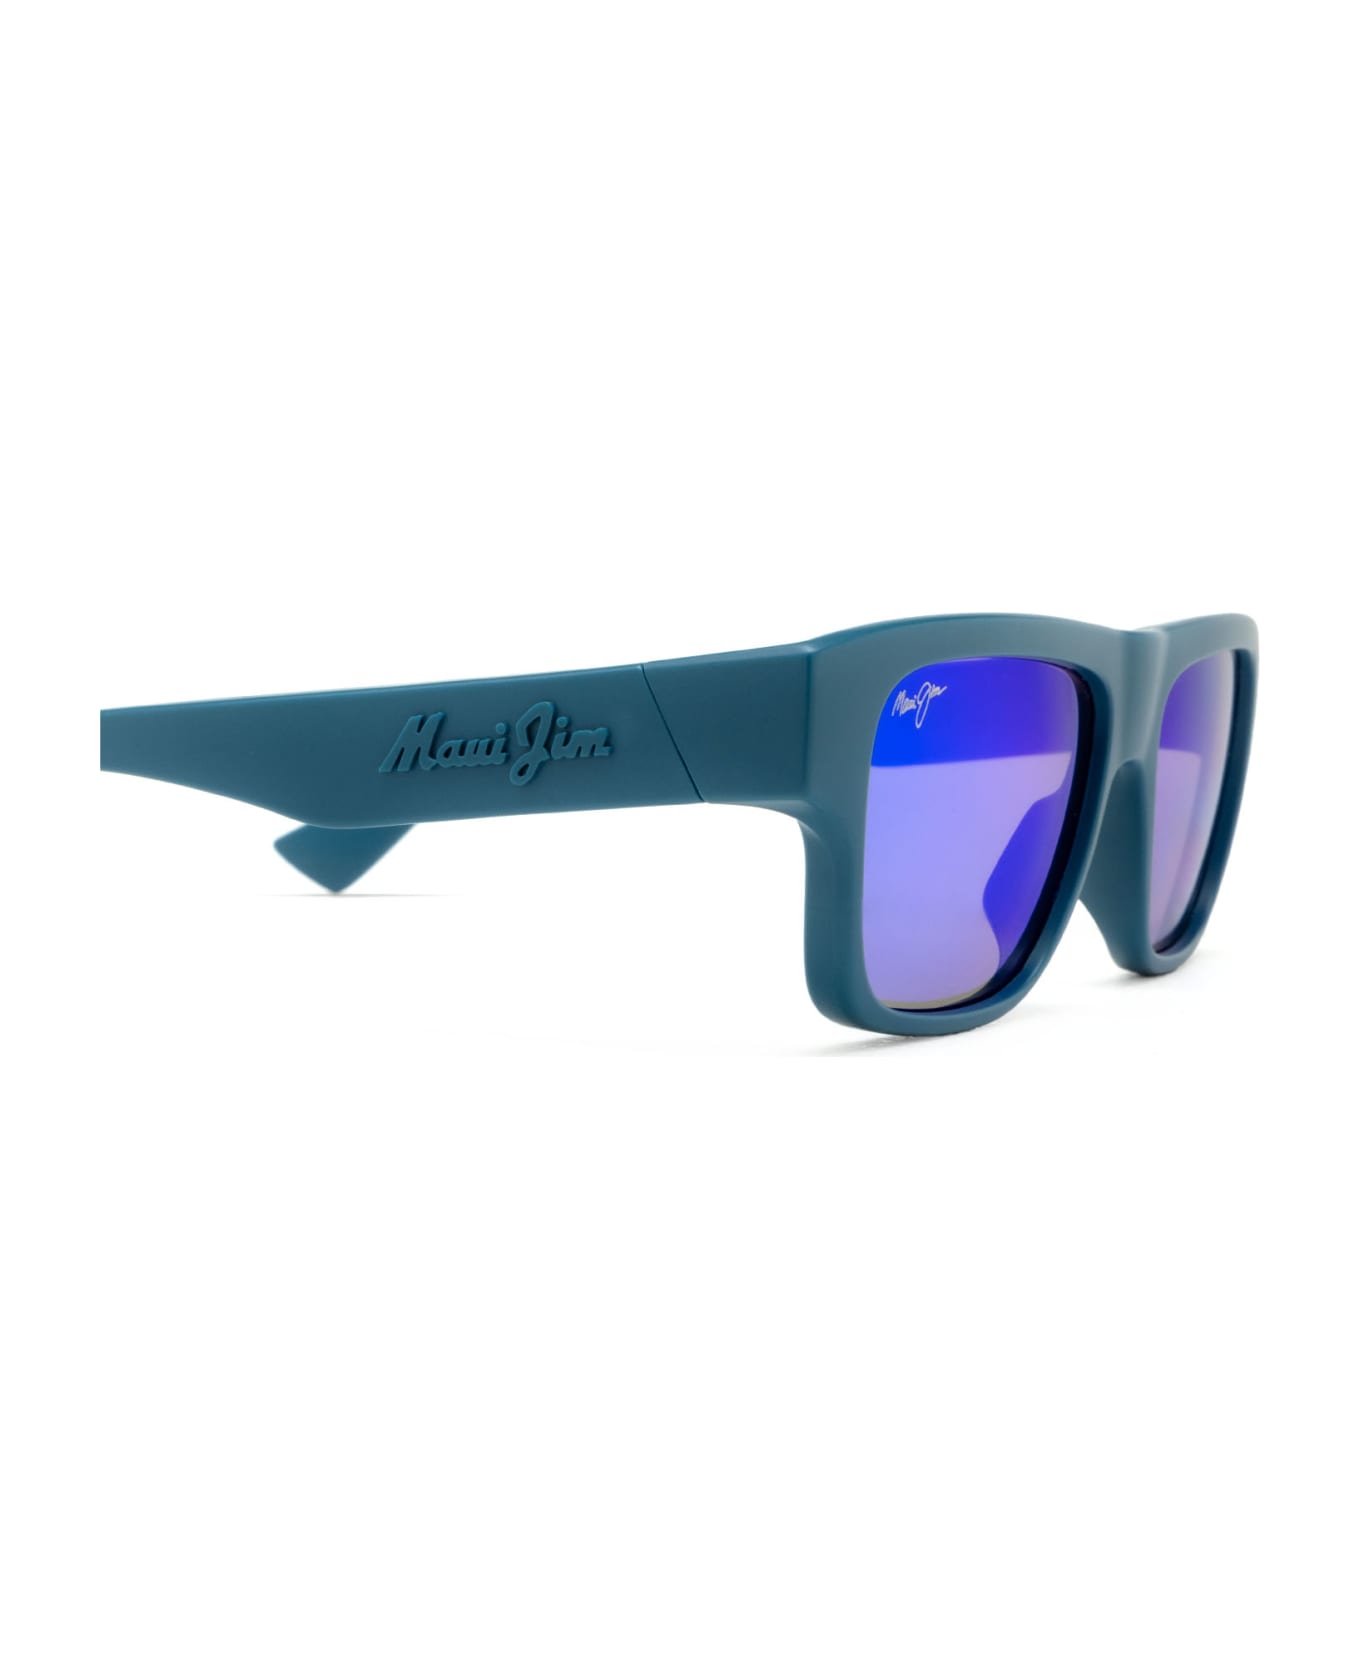 Maui Jim Mj0638s Blue Sunglasses - Blue